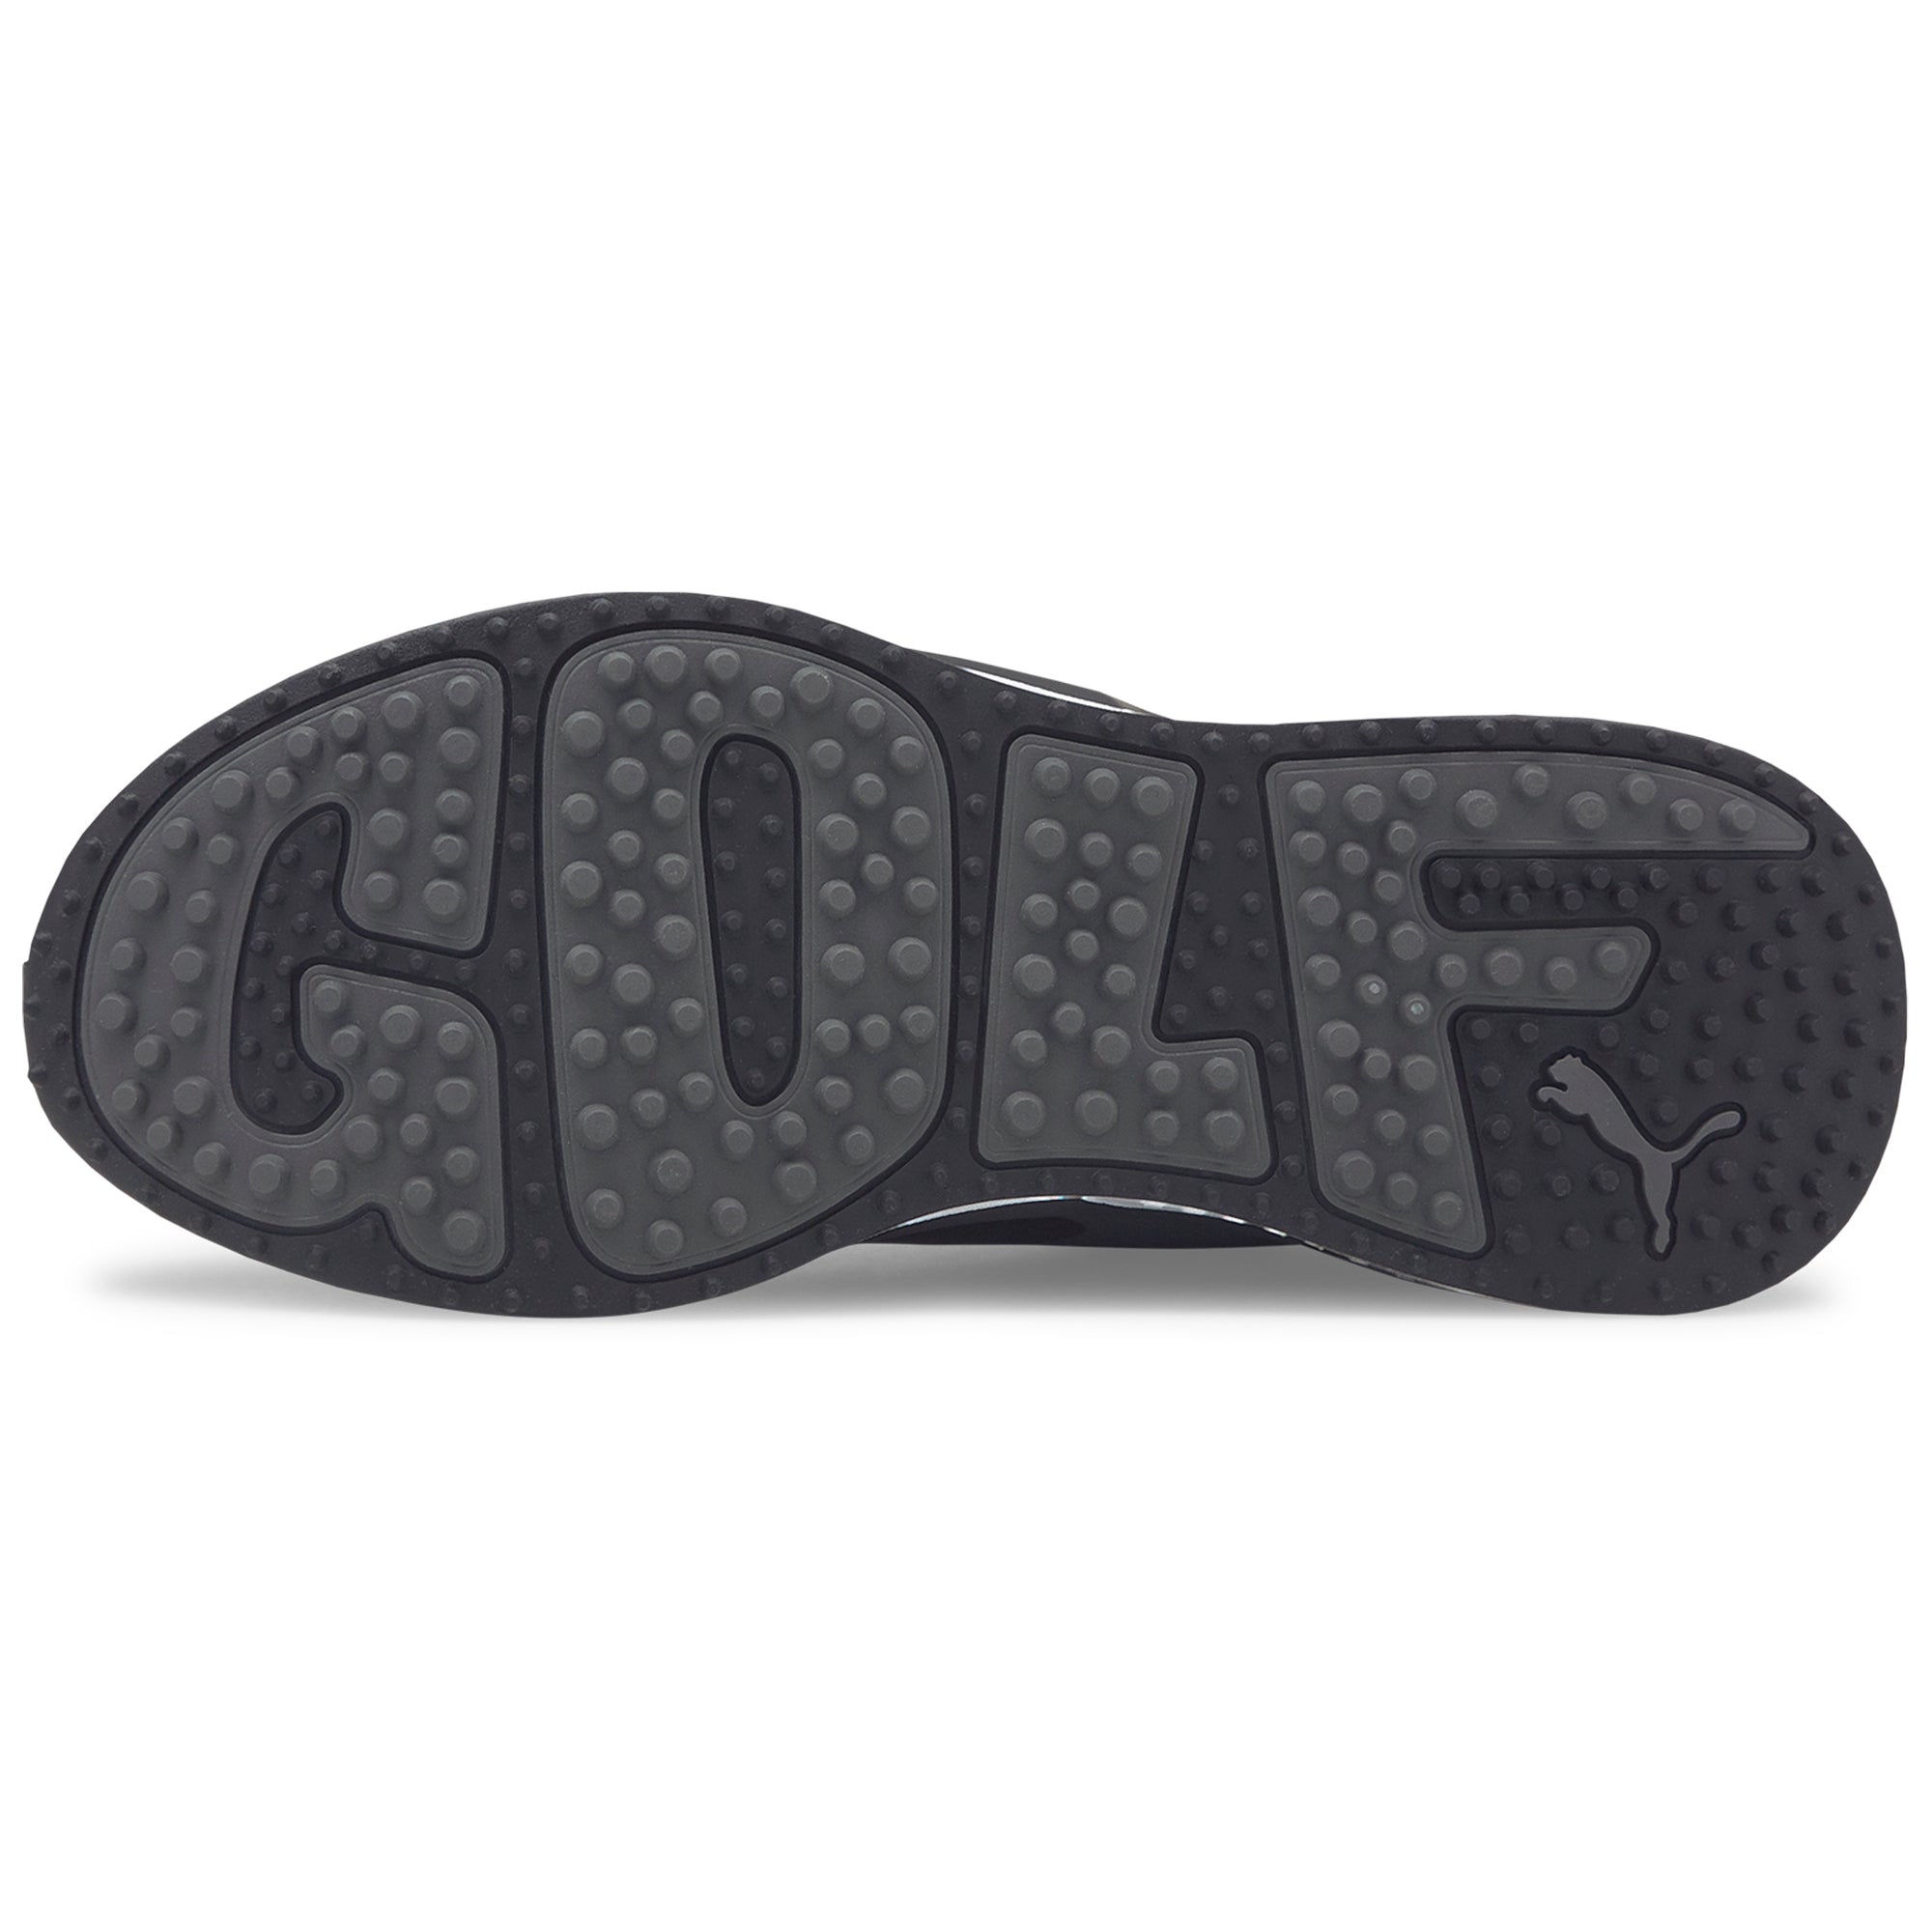 puma-gs-fast-golf-shoes-376357-puma-black-quiet-shade-03